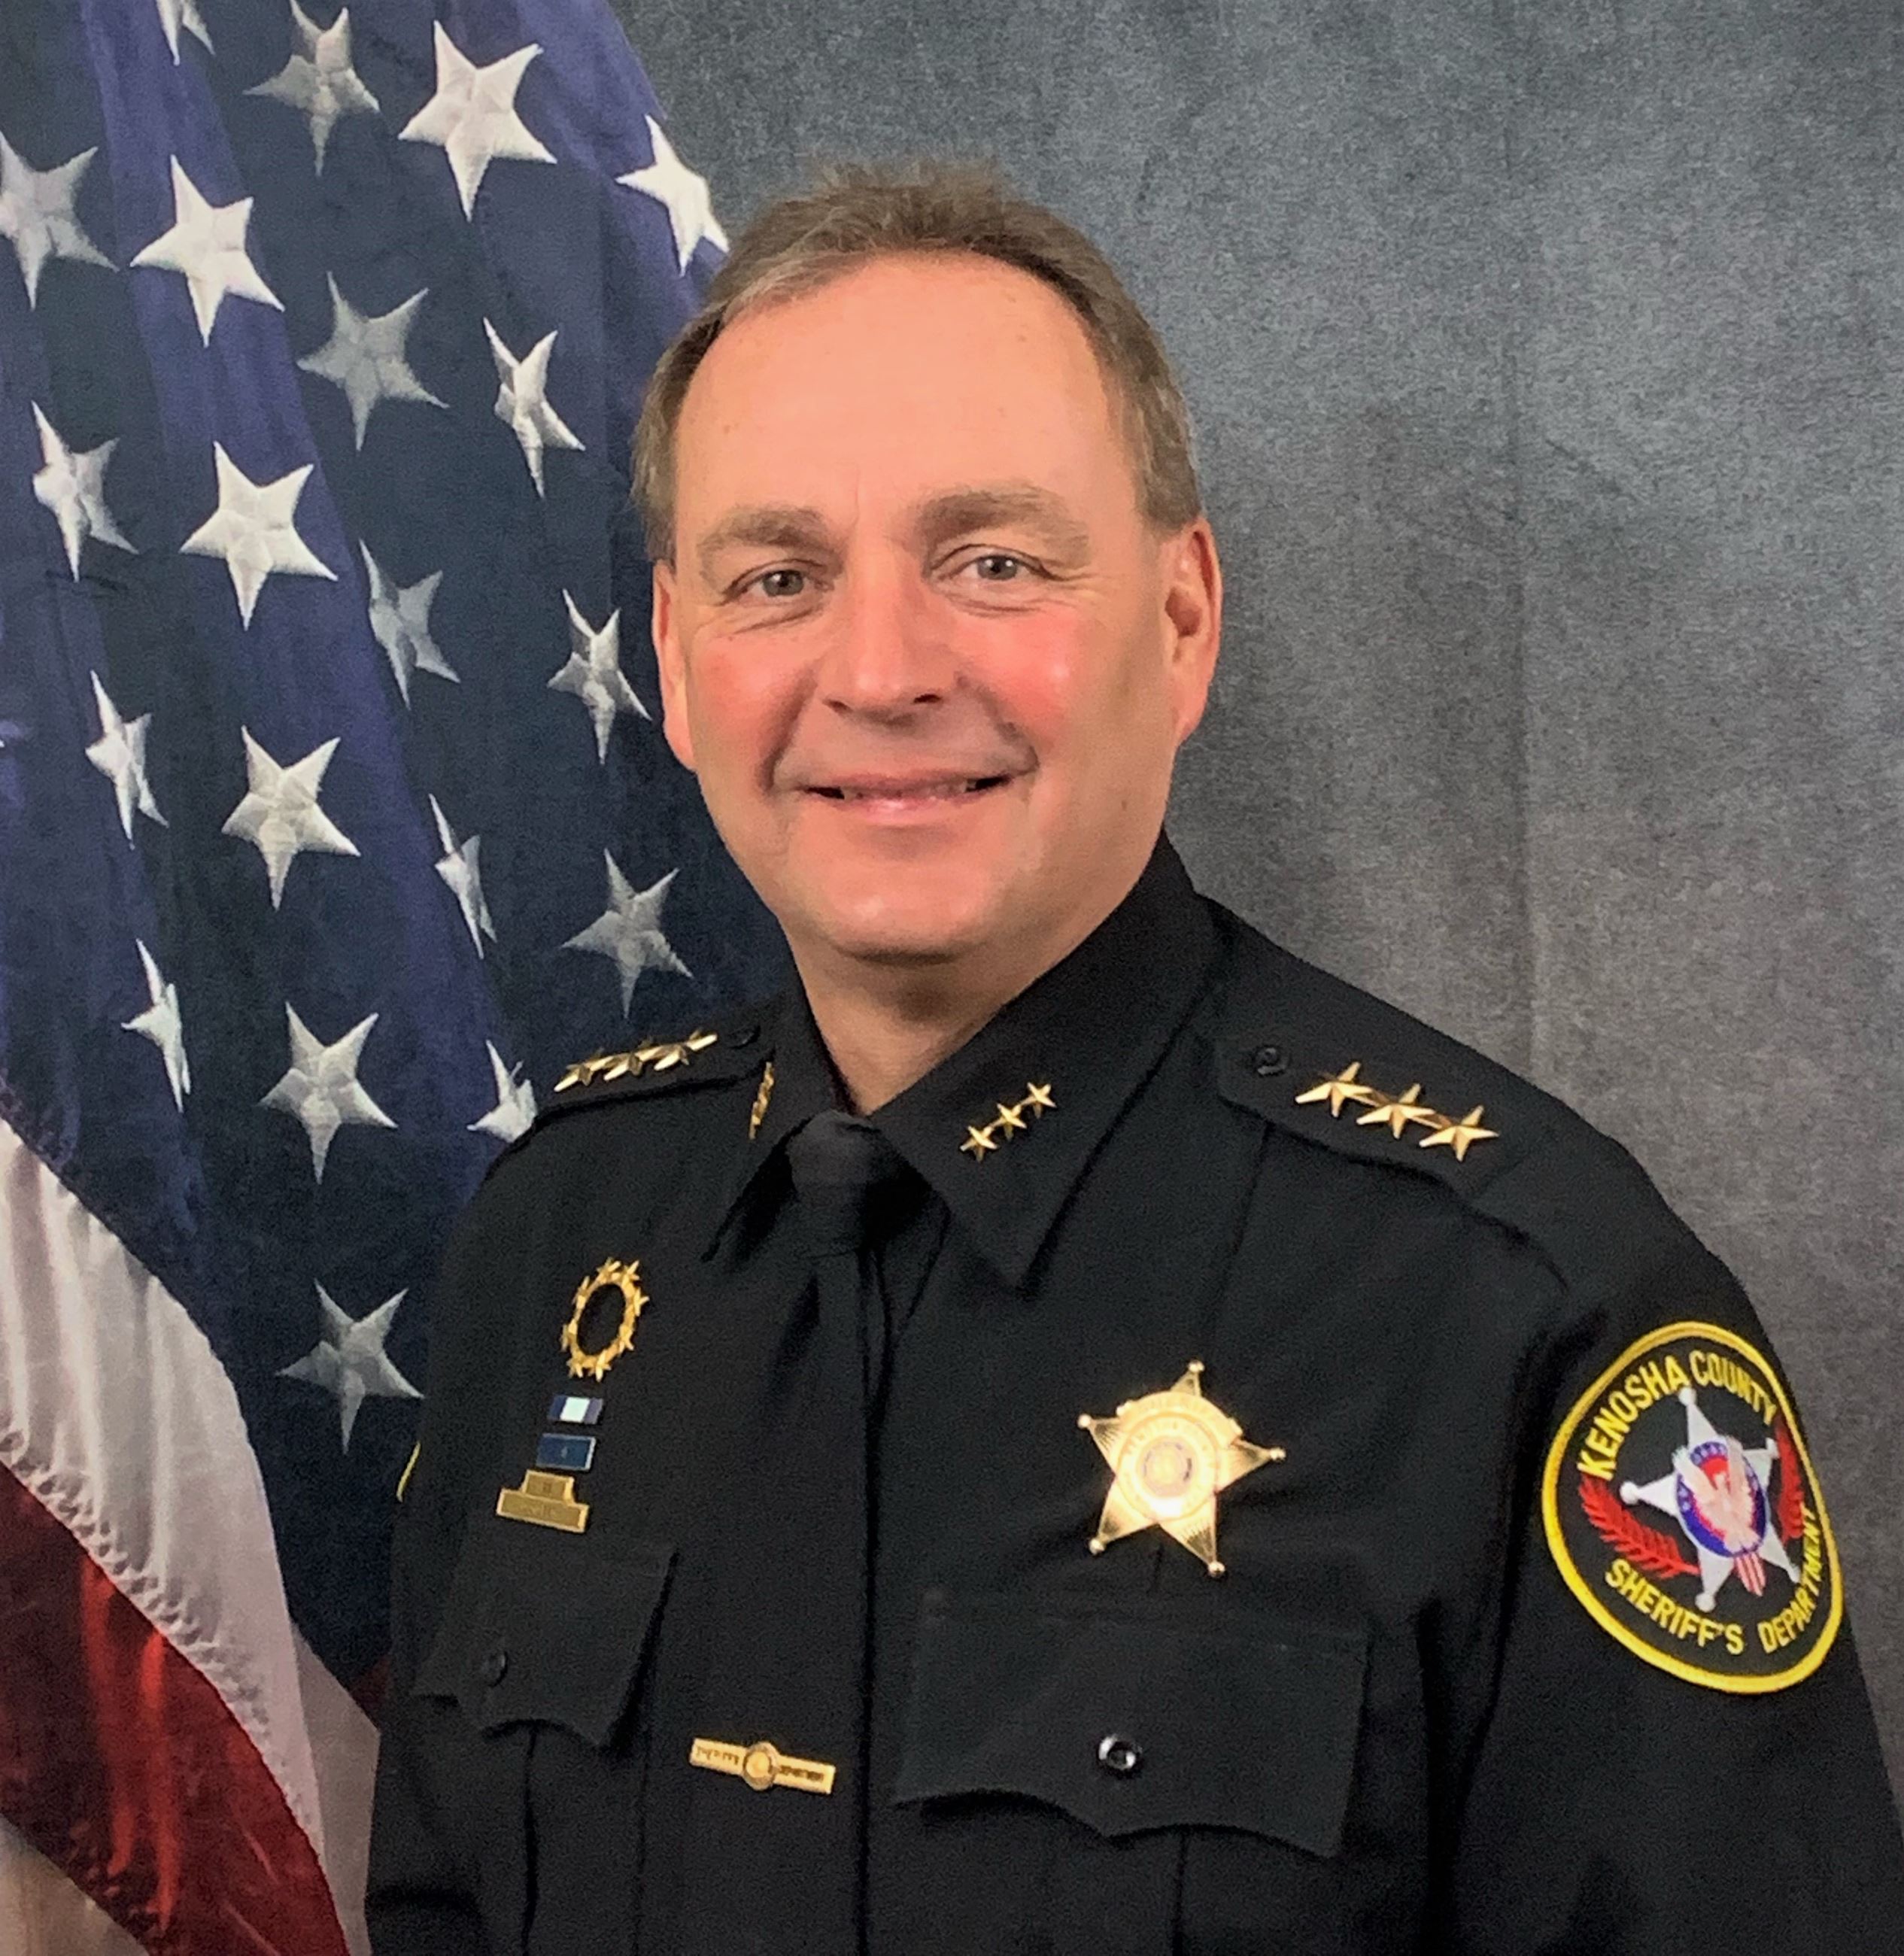 Sheriff David G. Beth